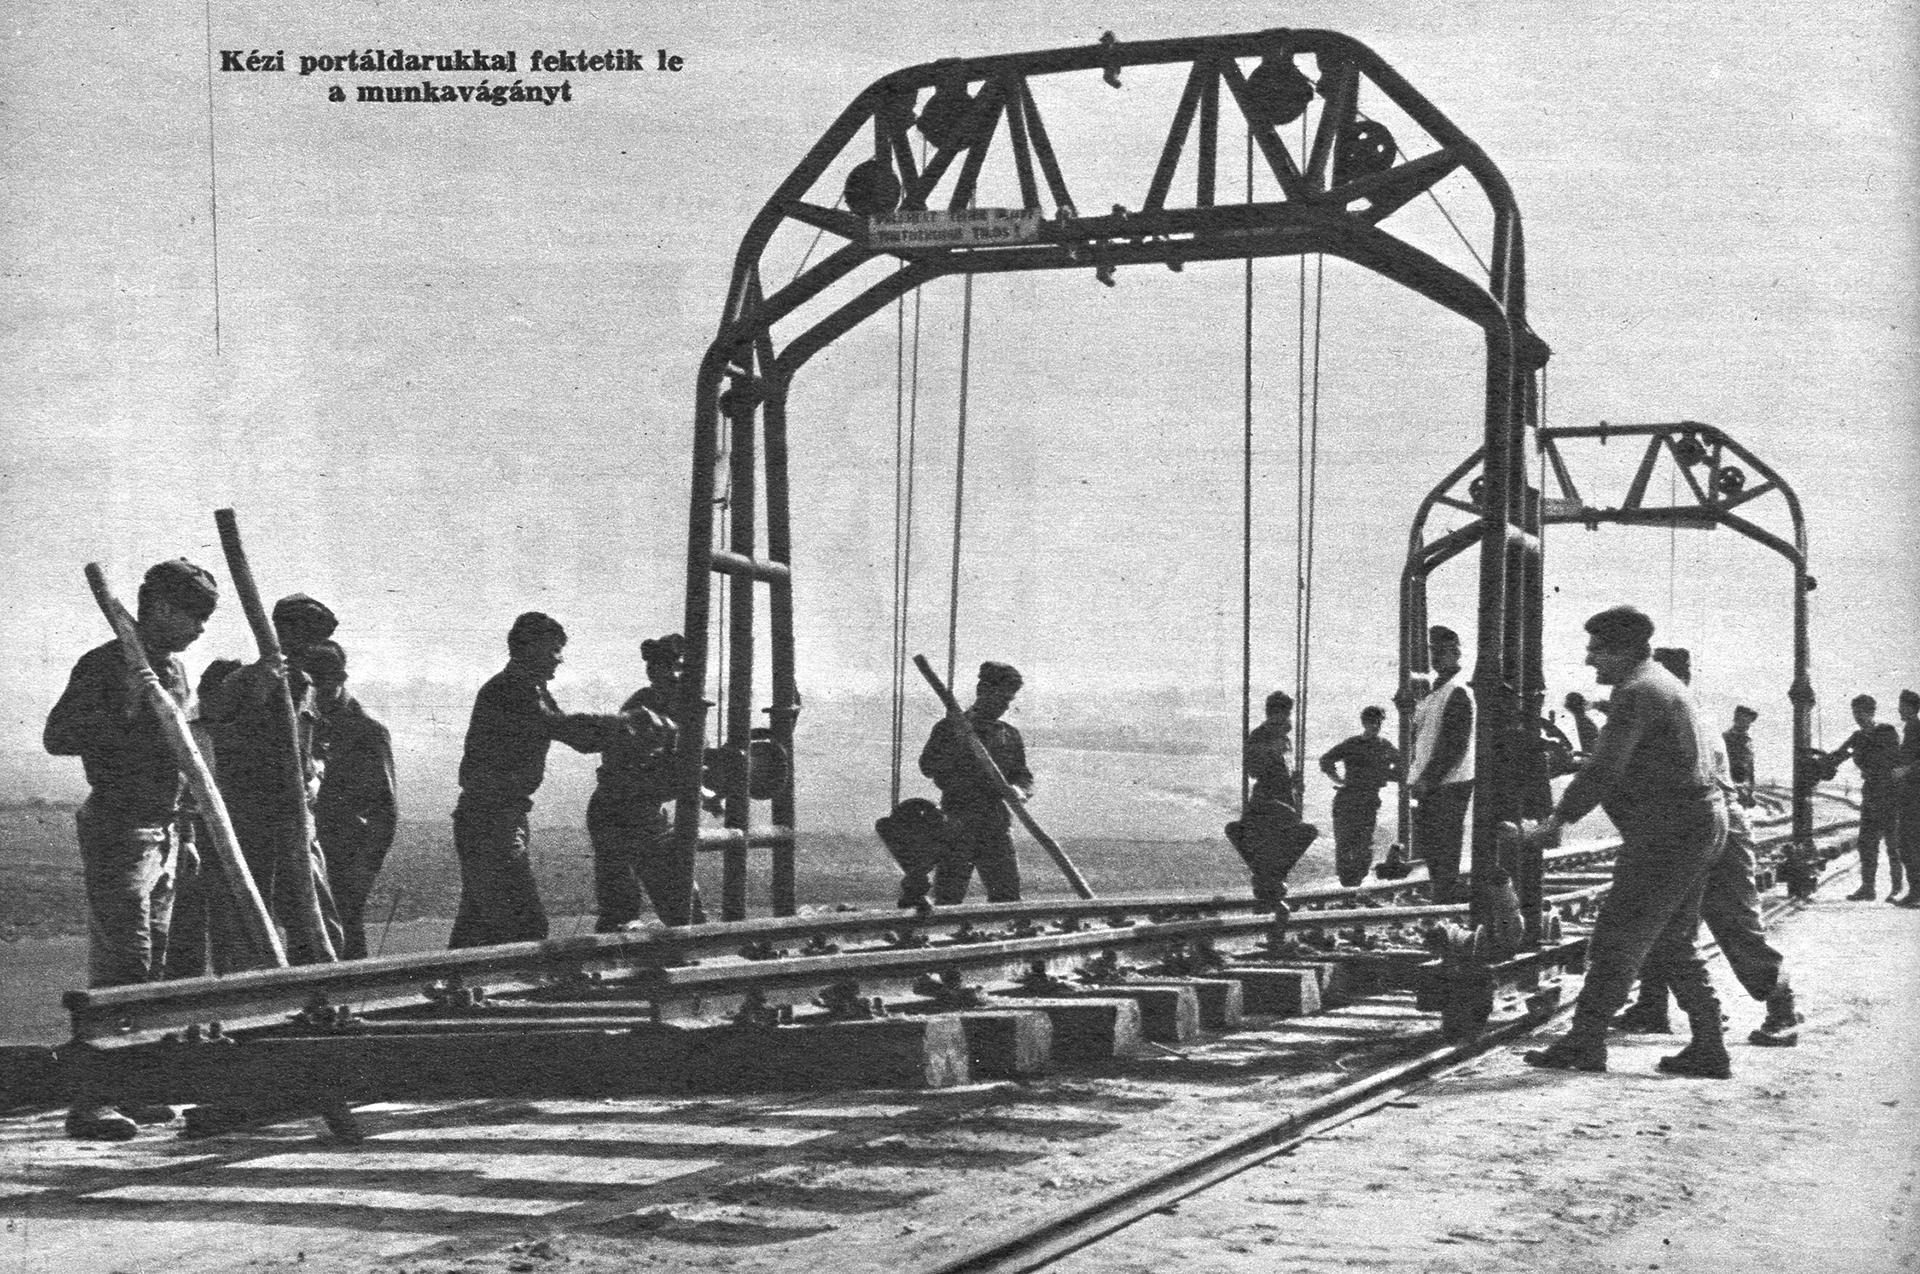 Pályaépítés. A néphadsereg sorköteles katonái a MÁV szakembereinek vezényletével, kézi portáldarukkal fektetik le a munkavágányt